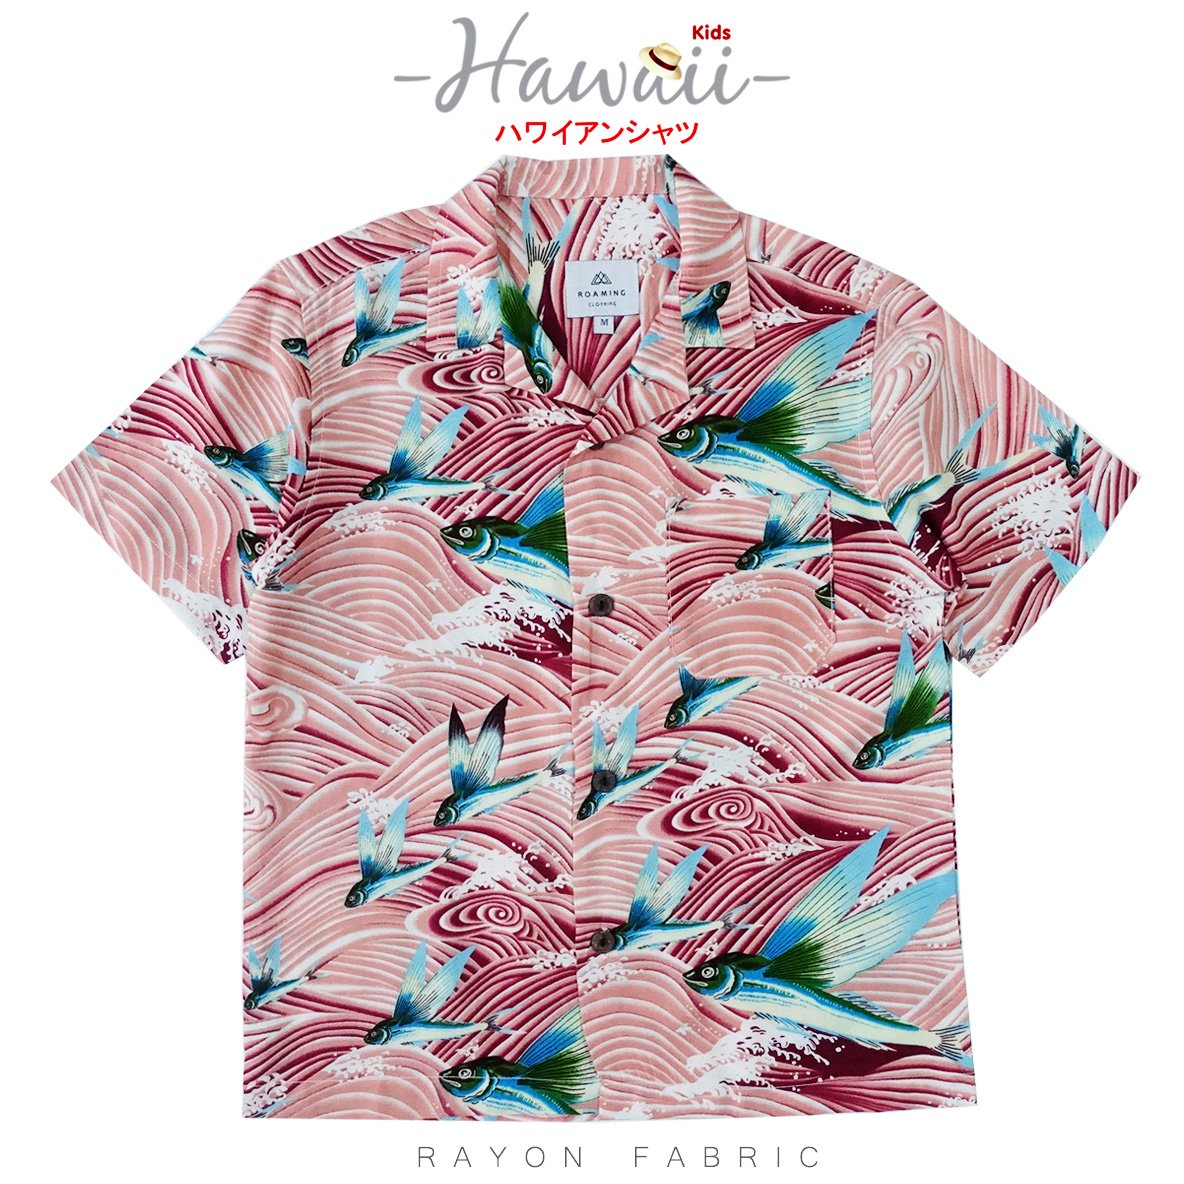 เสื้อฮาวาย เสื้อครอบครัว เด็ก&ผู้ใหญ่ Hawaiian aloha Shirts (ปลาบินโอโรส)